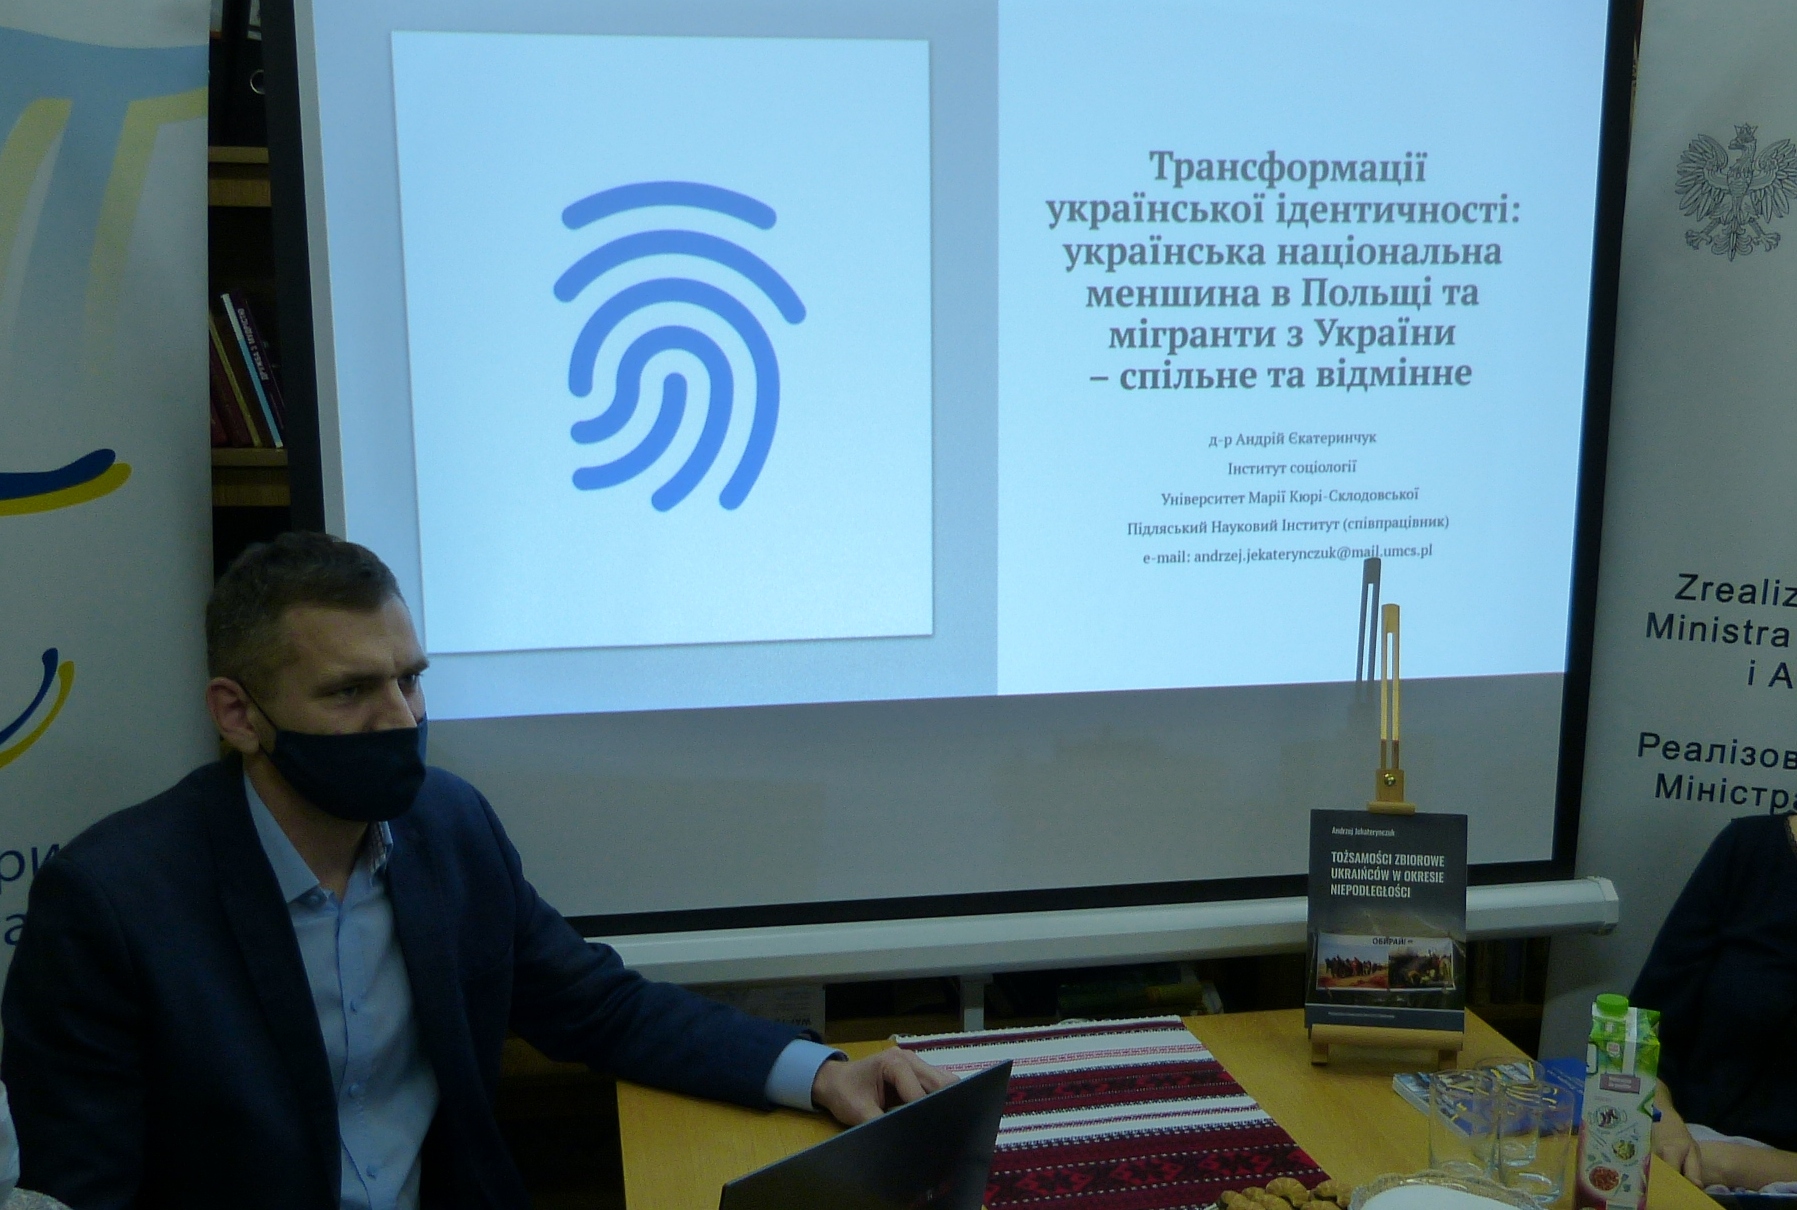 Доповідь підляського дослідника про трансформації української ідентичності